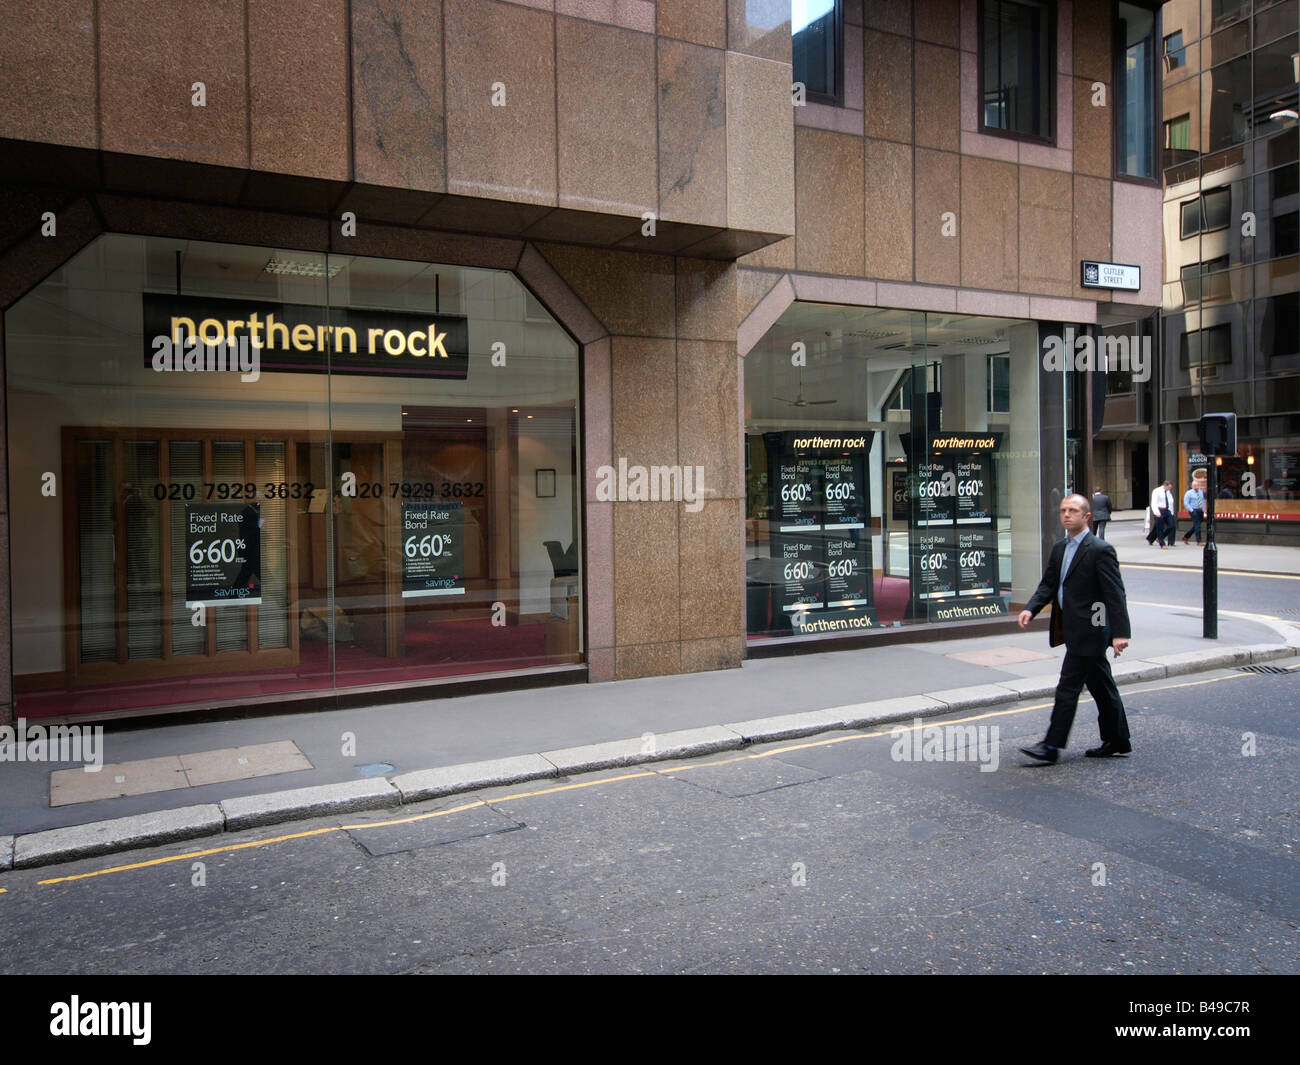 Direction générale de la banque Northern Rock Cutler Street London UK Banque D'Images